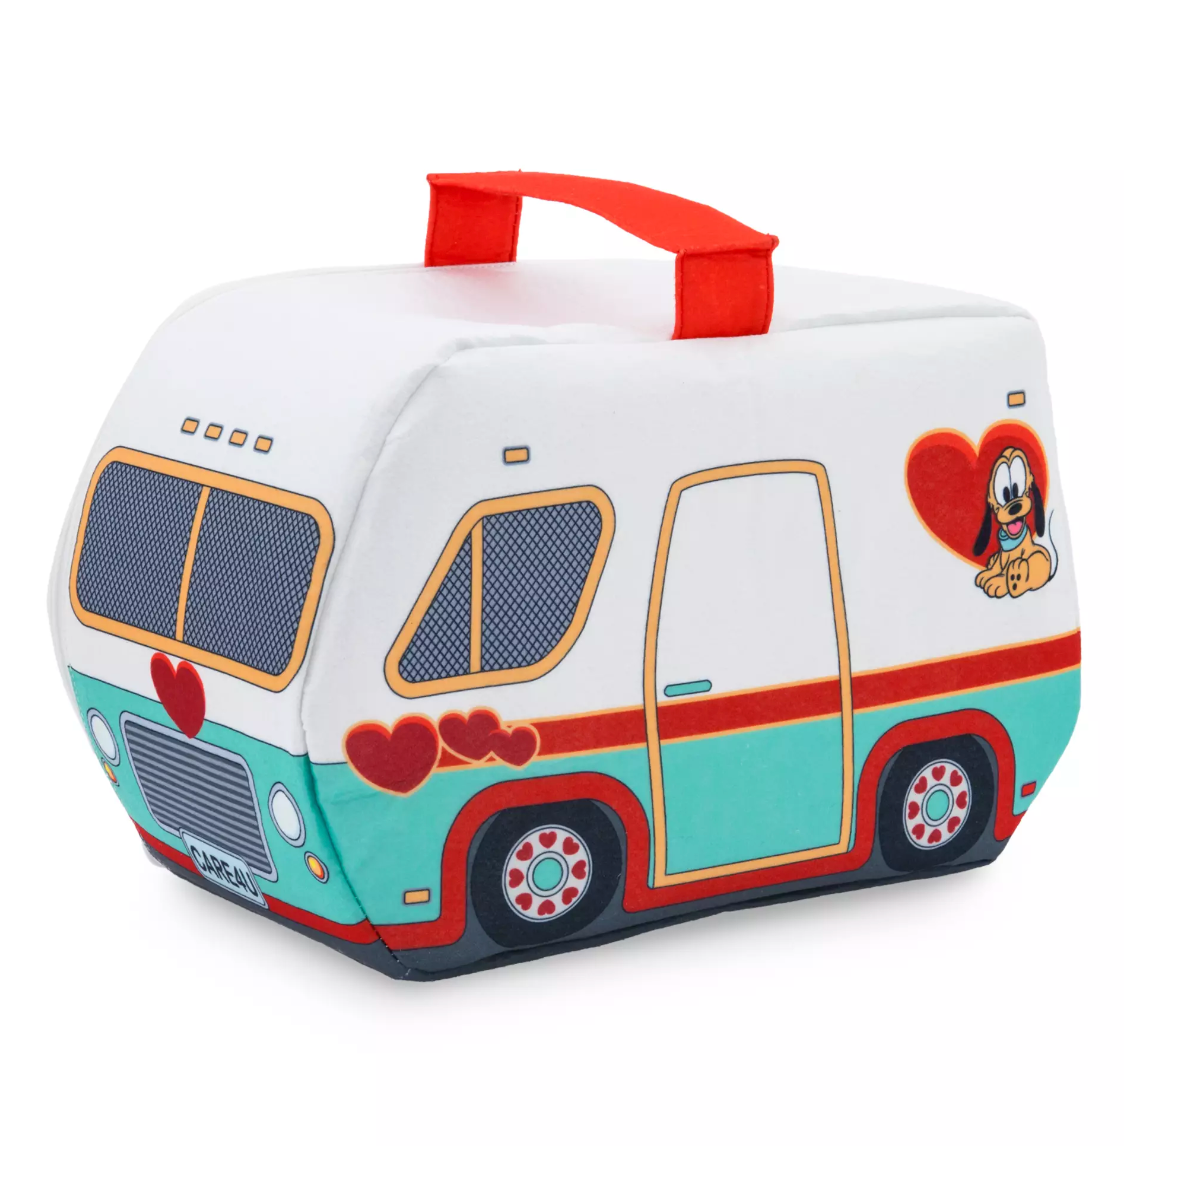 Disney Junior Pluto Vet Set Toy New with Box